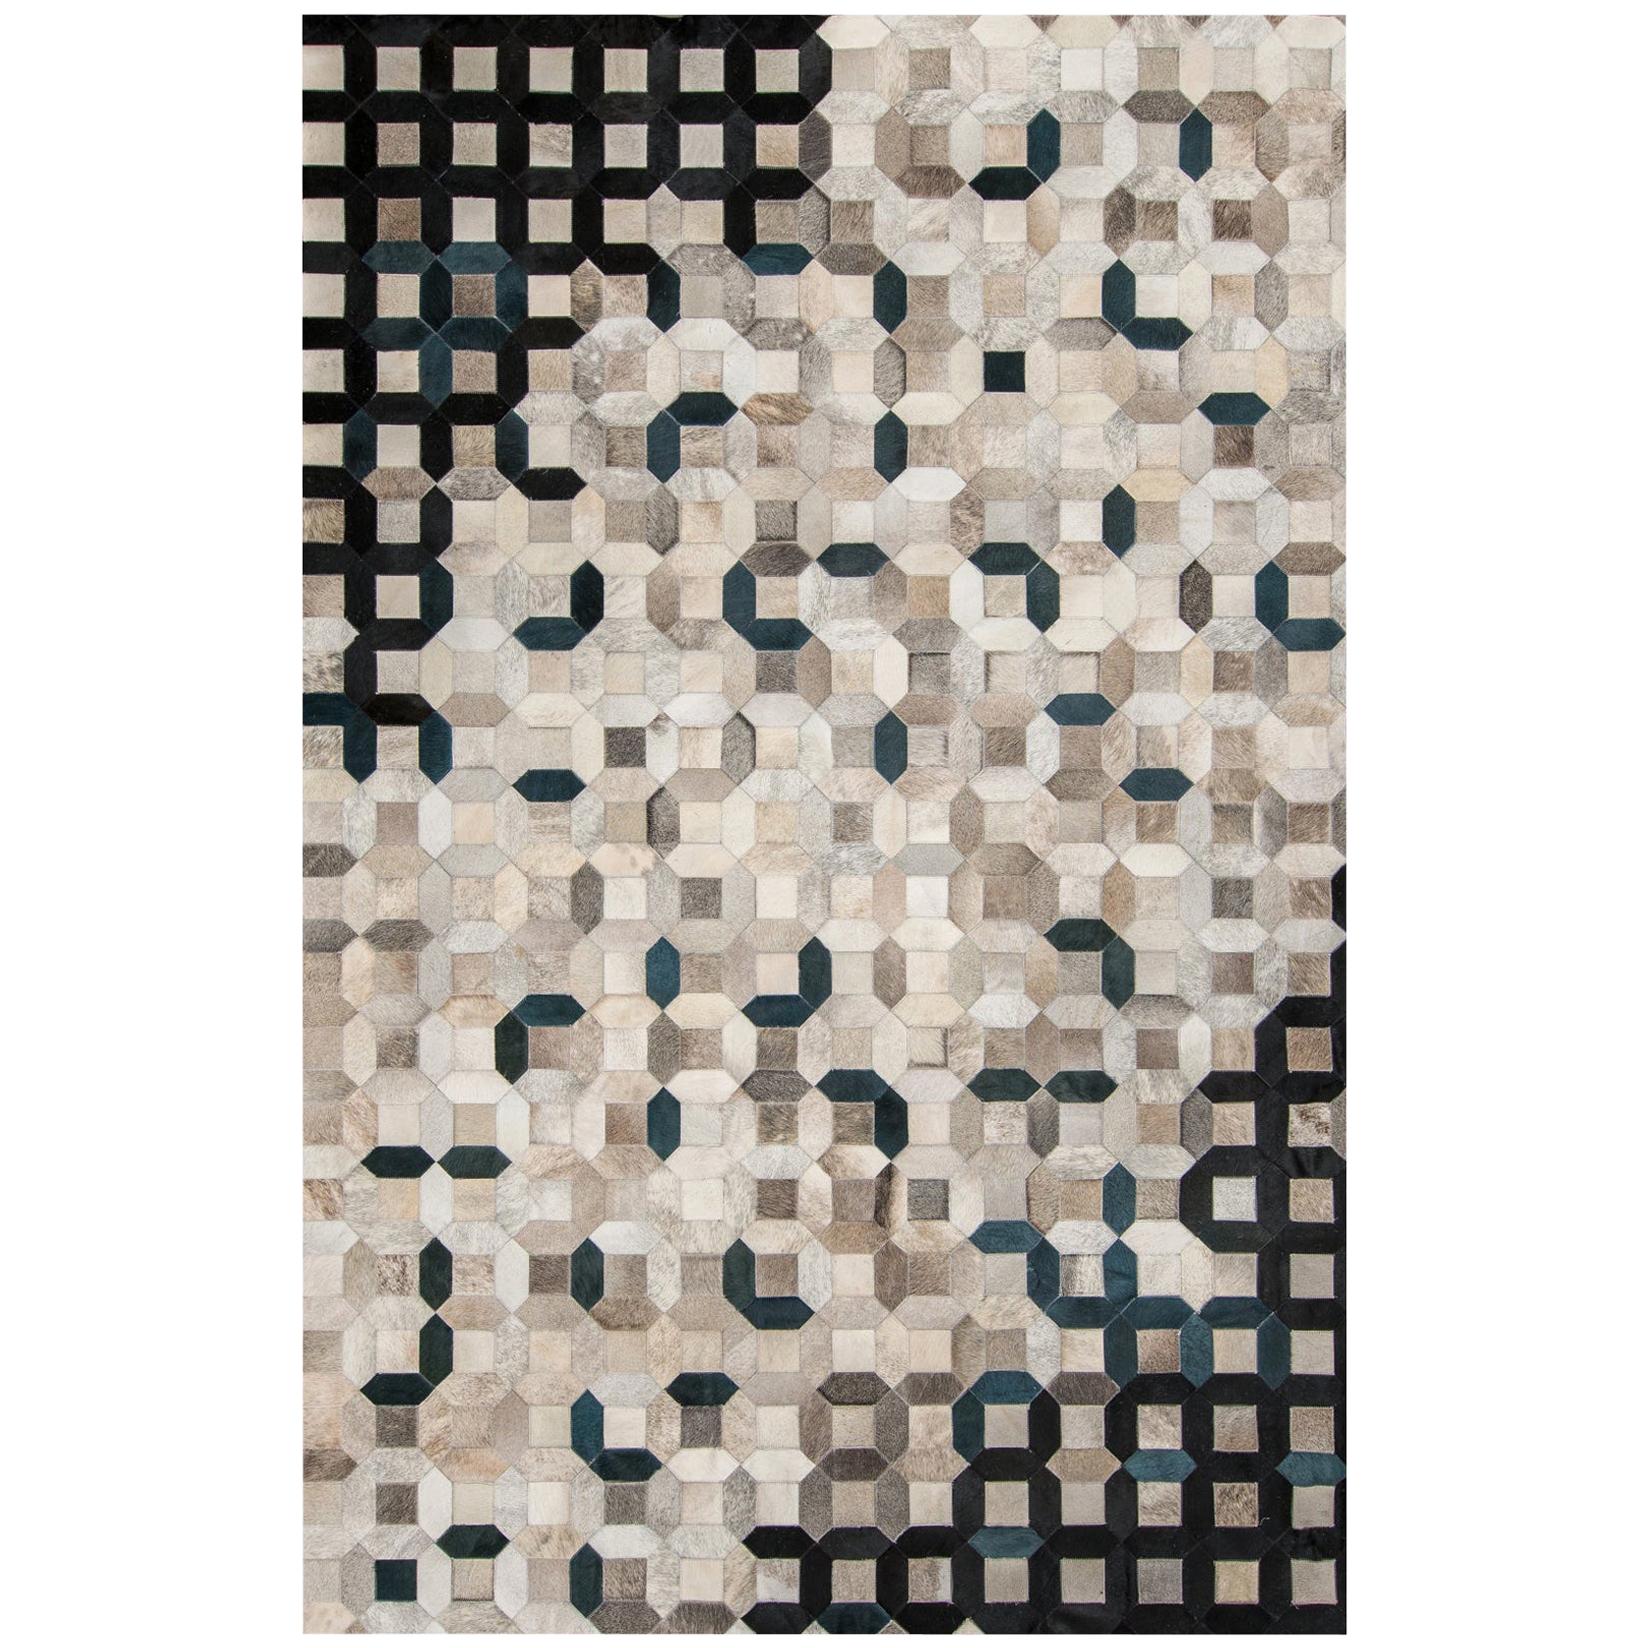 Black, gray tessellation Trellis Cowhide Area Floor Rug Large For Sale ...